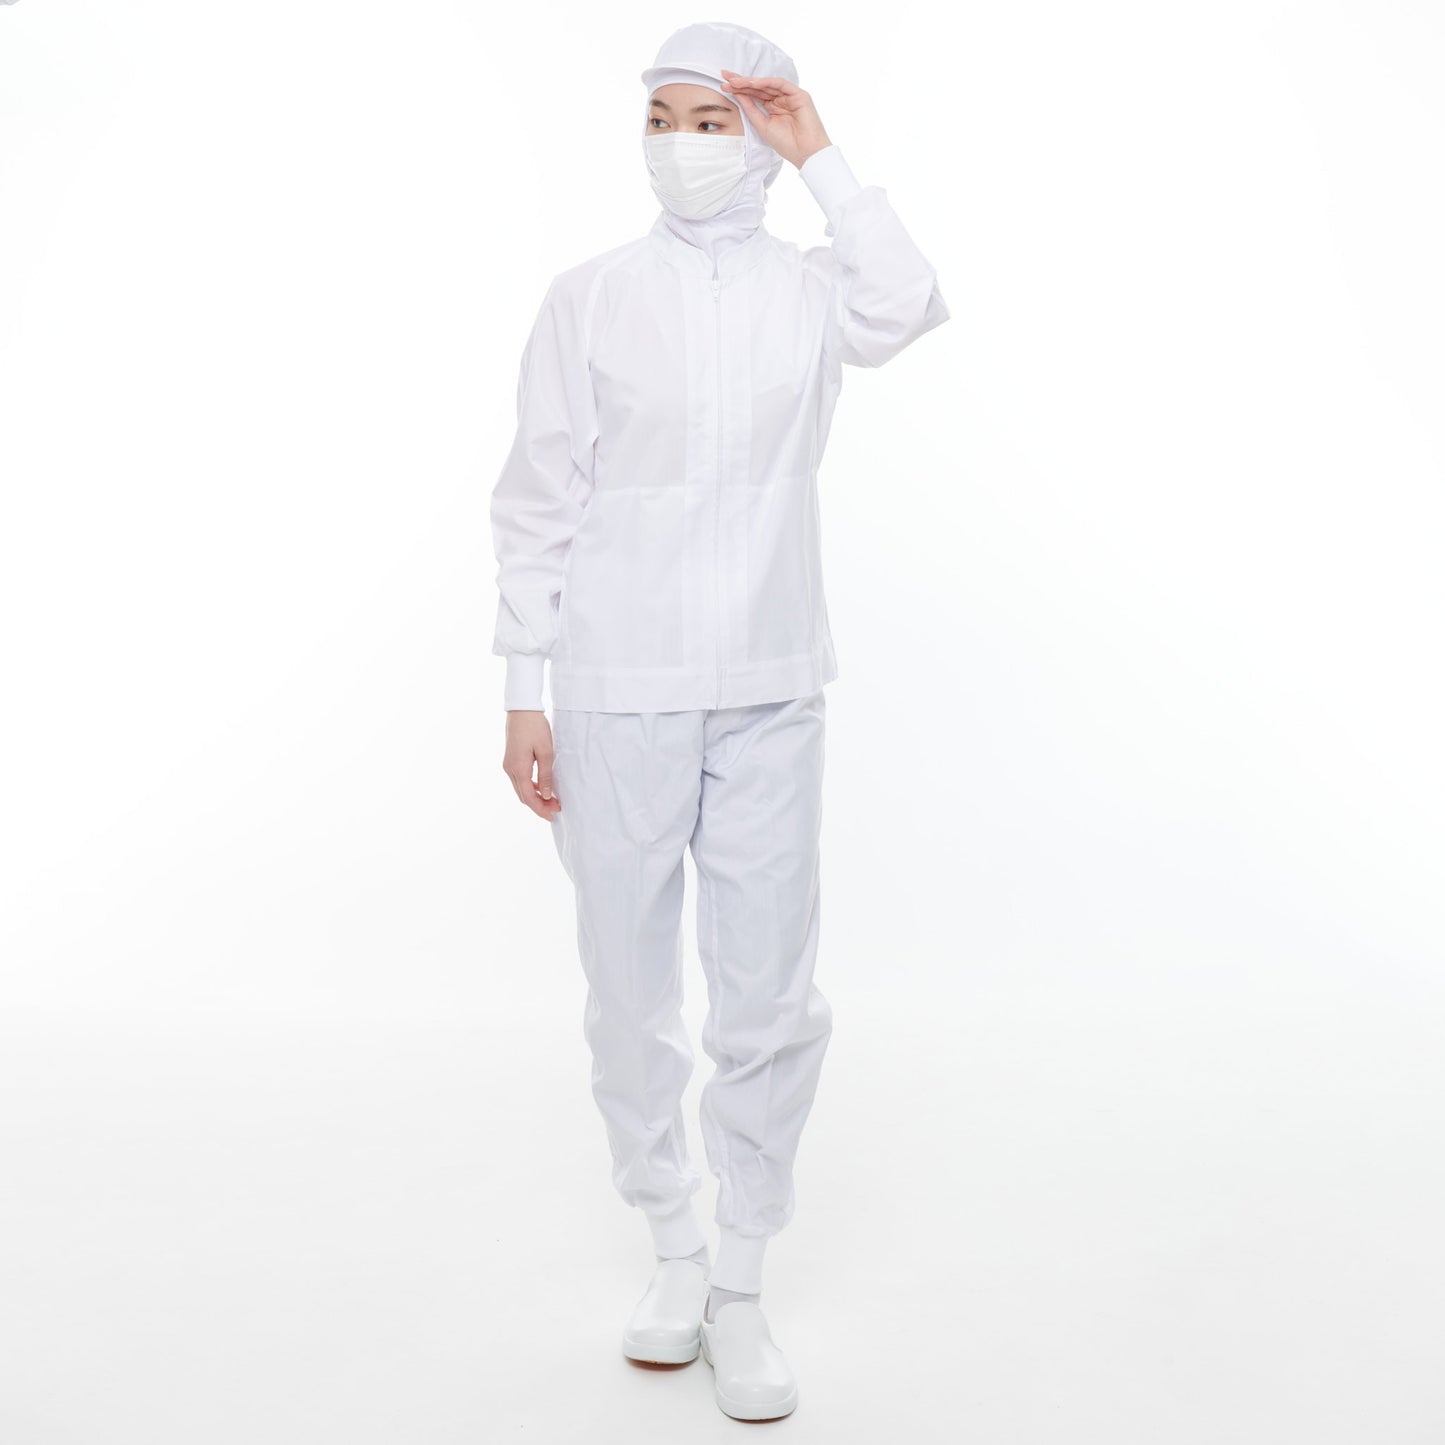 サンエス 食品工場用白衣 選べる上下セット【FX70951R×FX70957J】